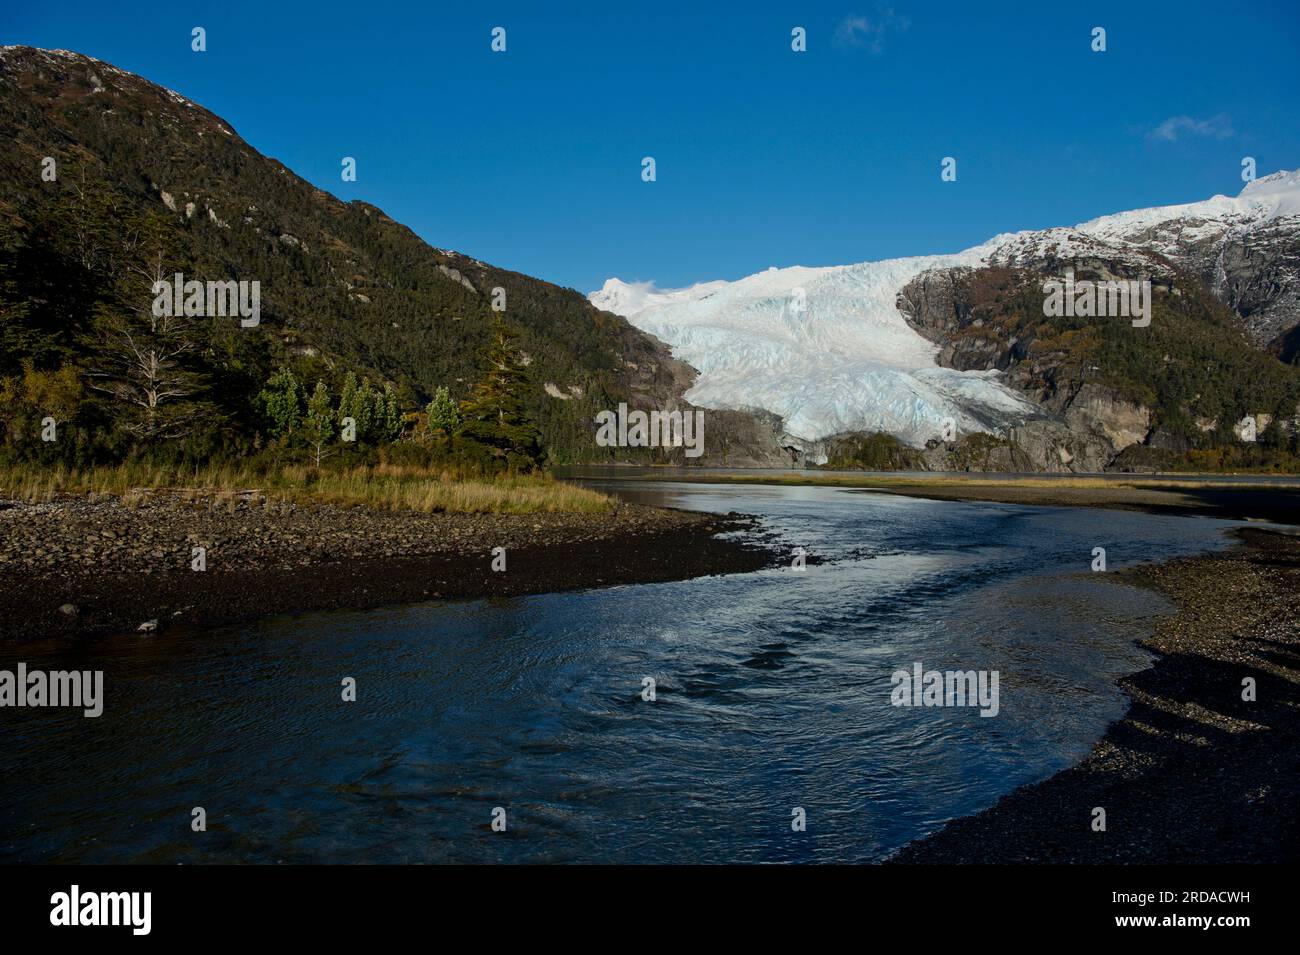 Aguila Glacier in Parque Nacional Alberto de Agostini in southern Chile Stock Photo